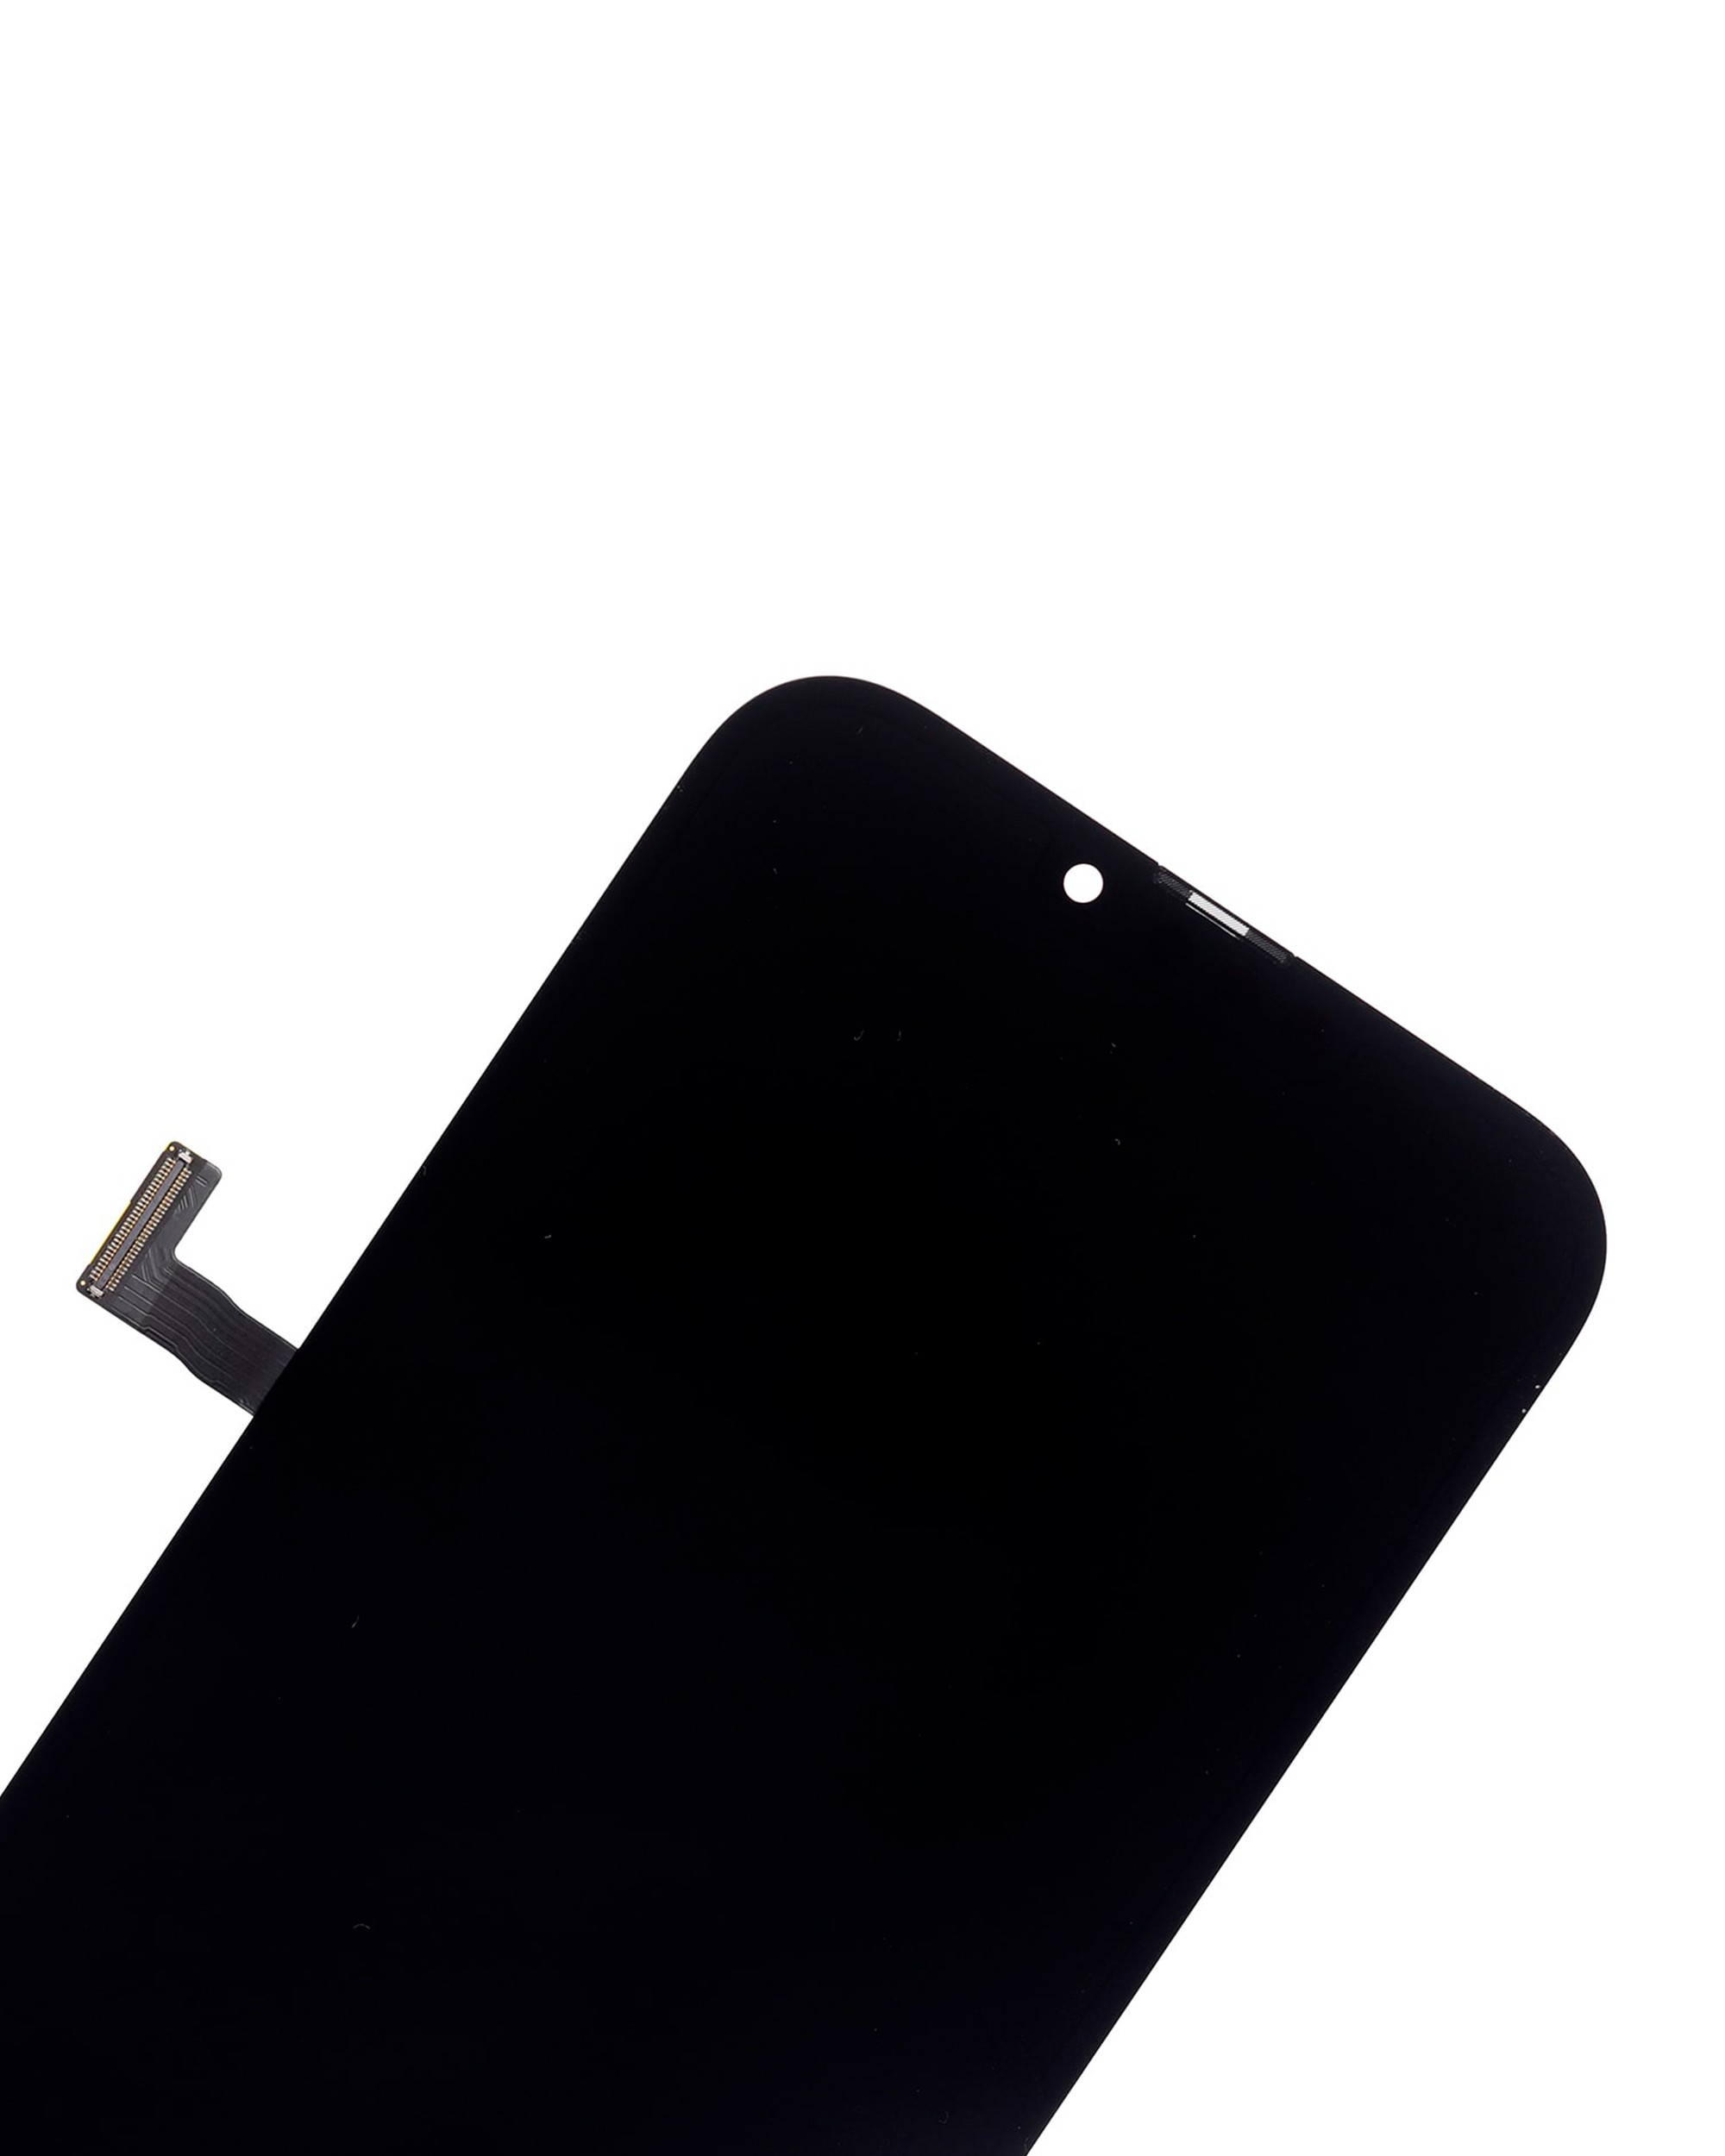 আইফোন 13 প্রো ম্যাক্সের জন্য OLED অ্যাসেম্বলি স্ক্রিন প্রতিস্থাপন - 4 